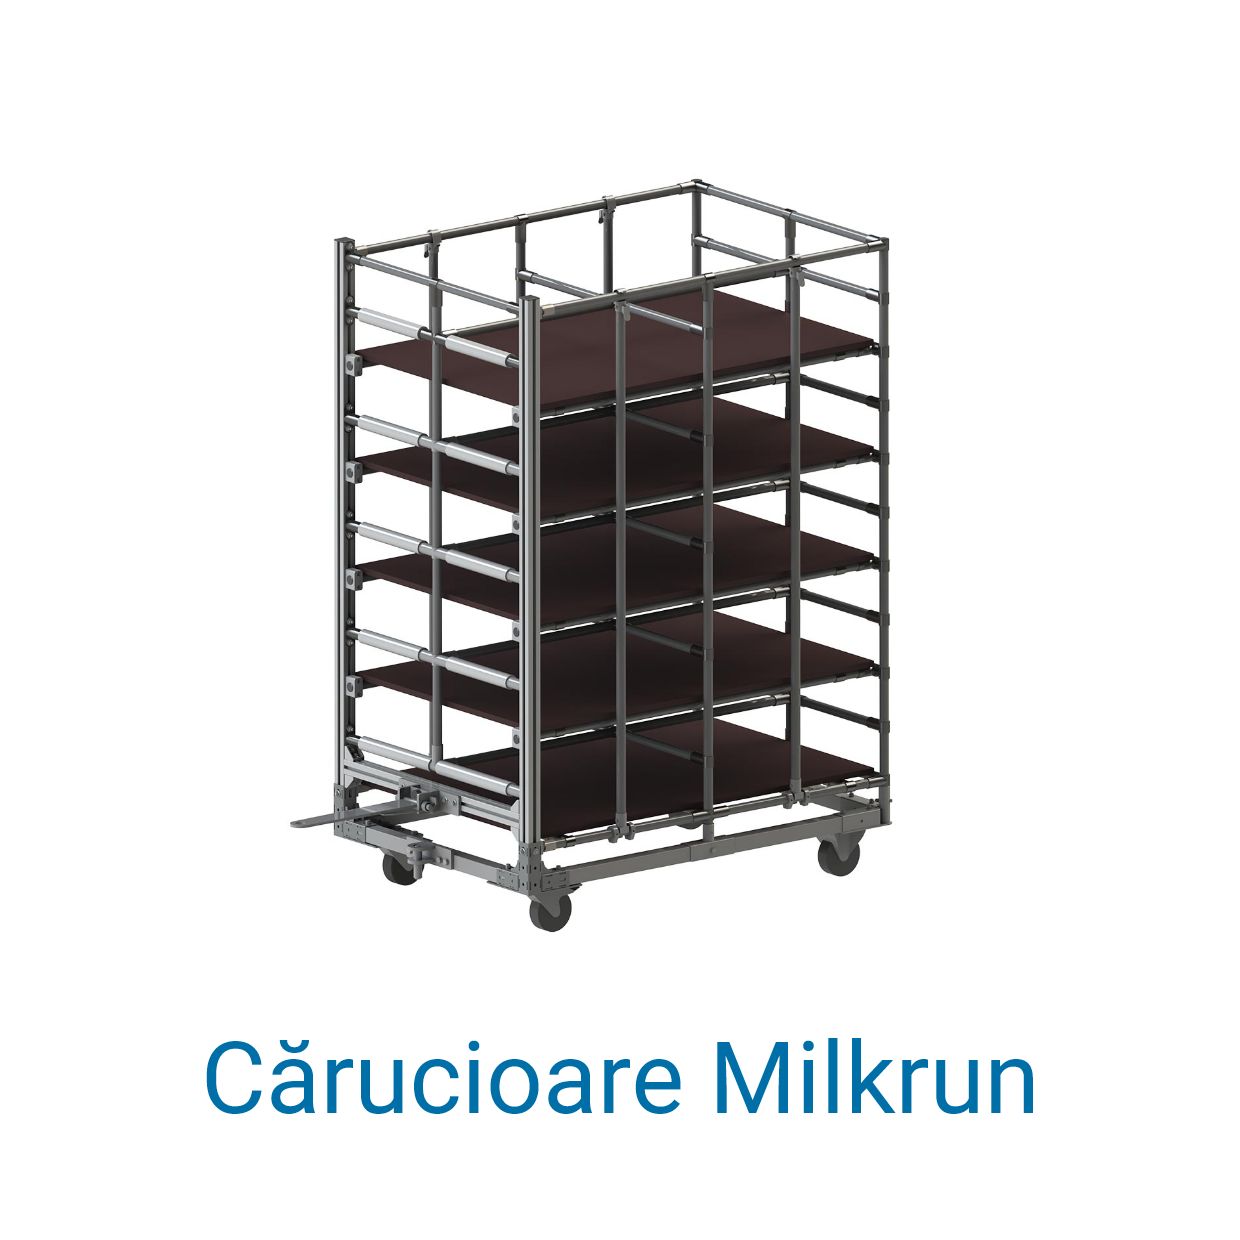 Un cărucior tip Milkrun comandat de la BeeWaTec.